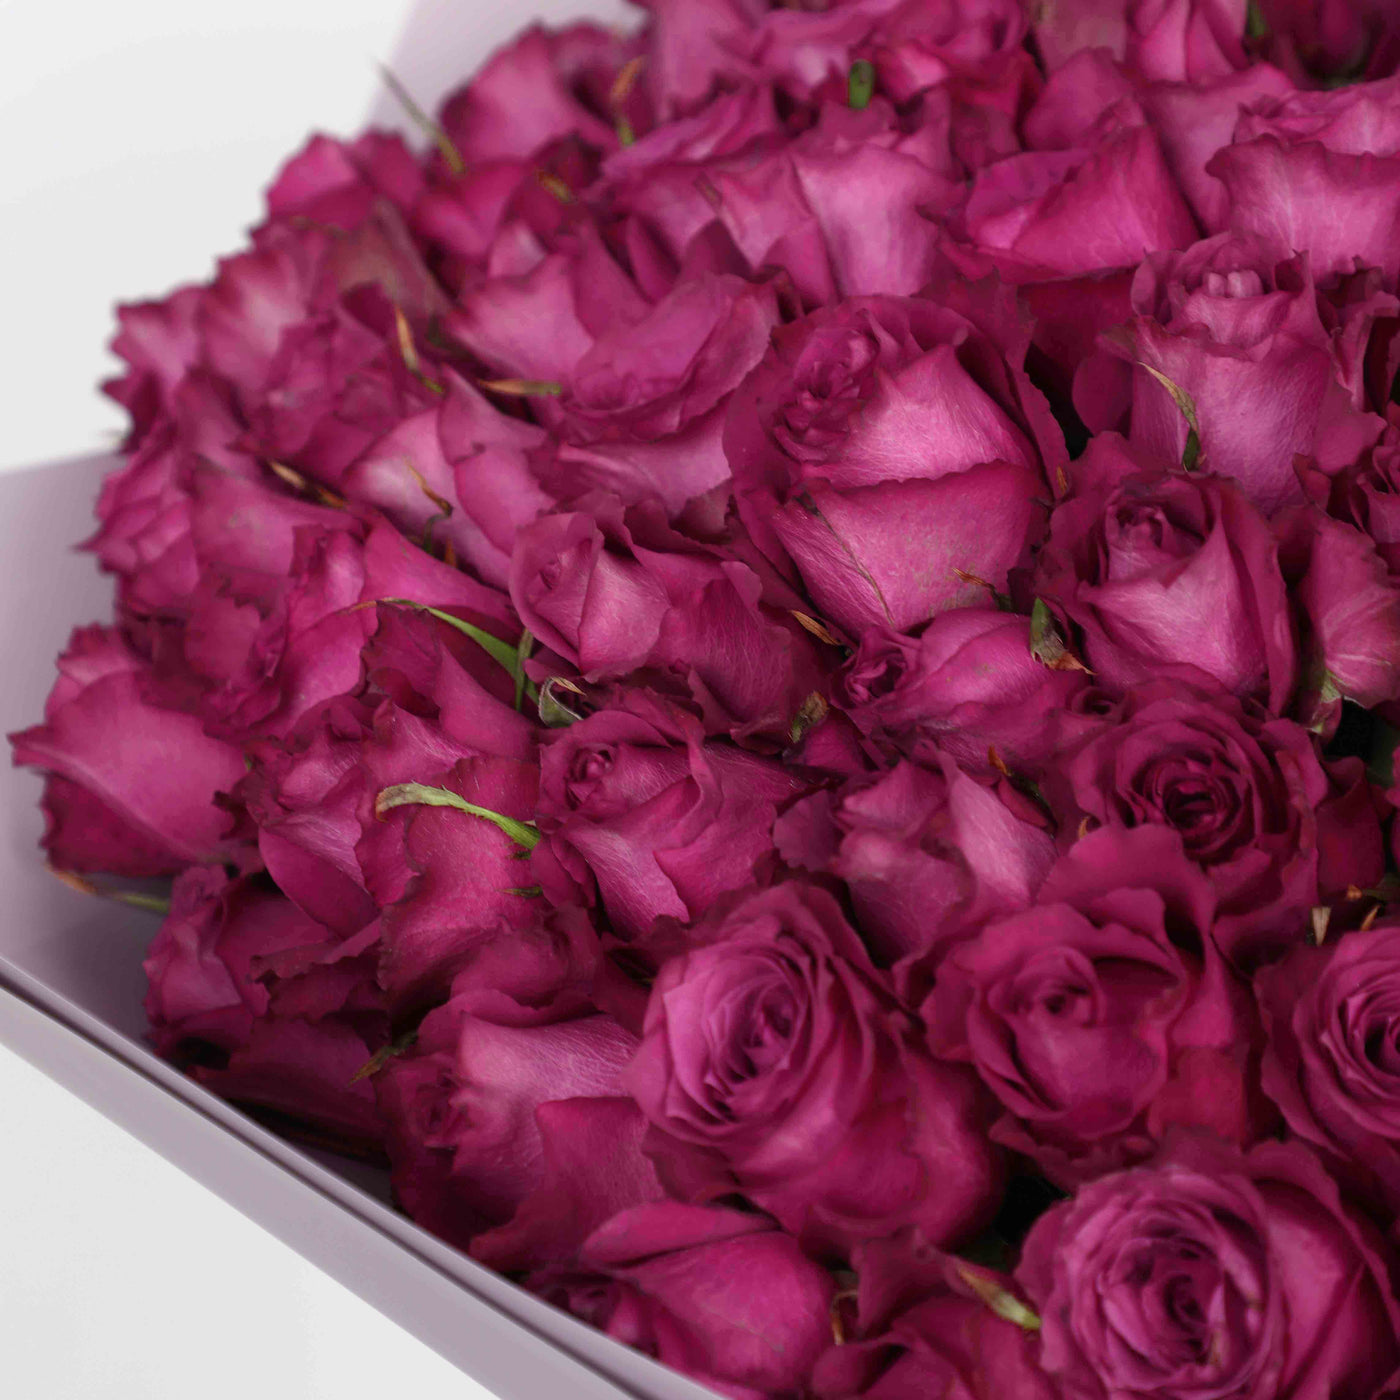 100 Purple Roses Bouquet - Fresh Flowers